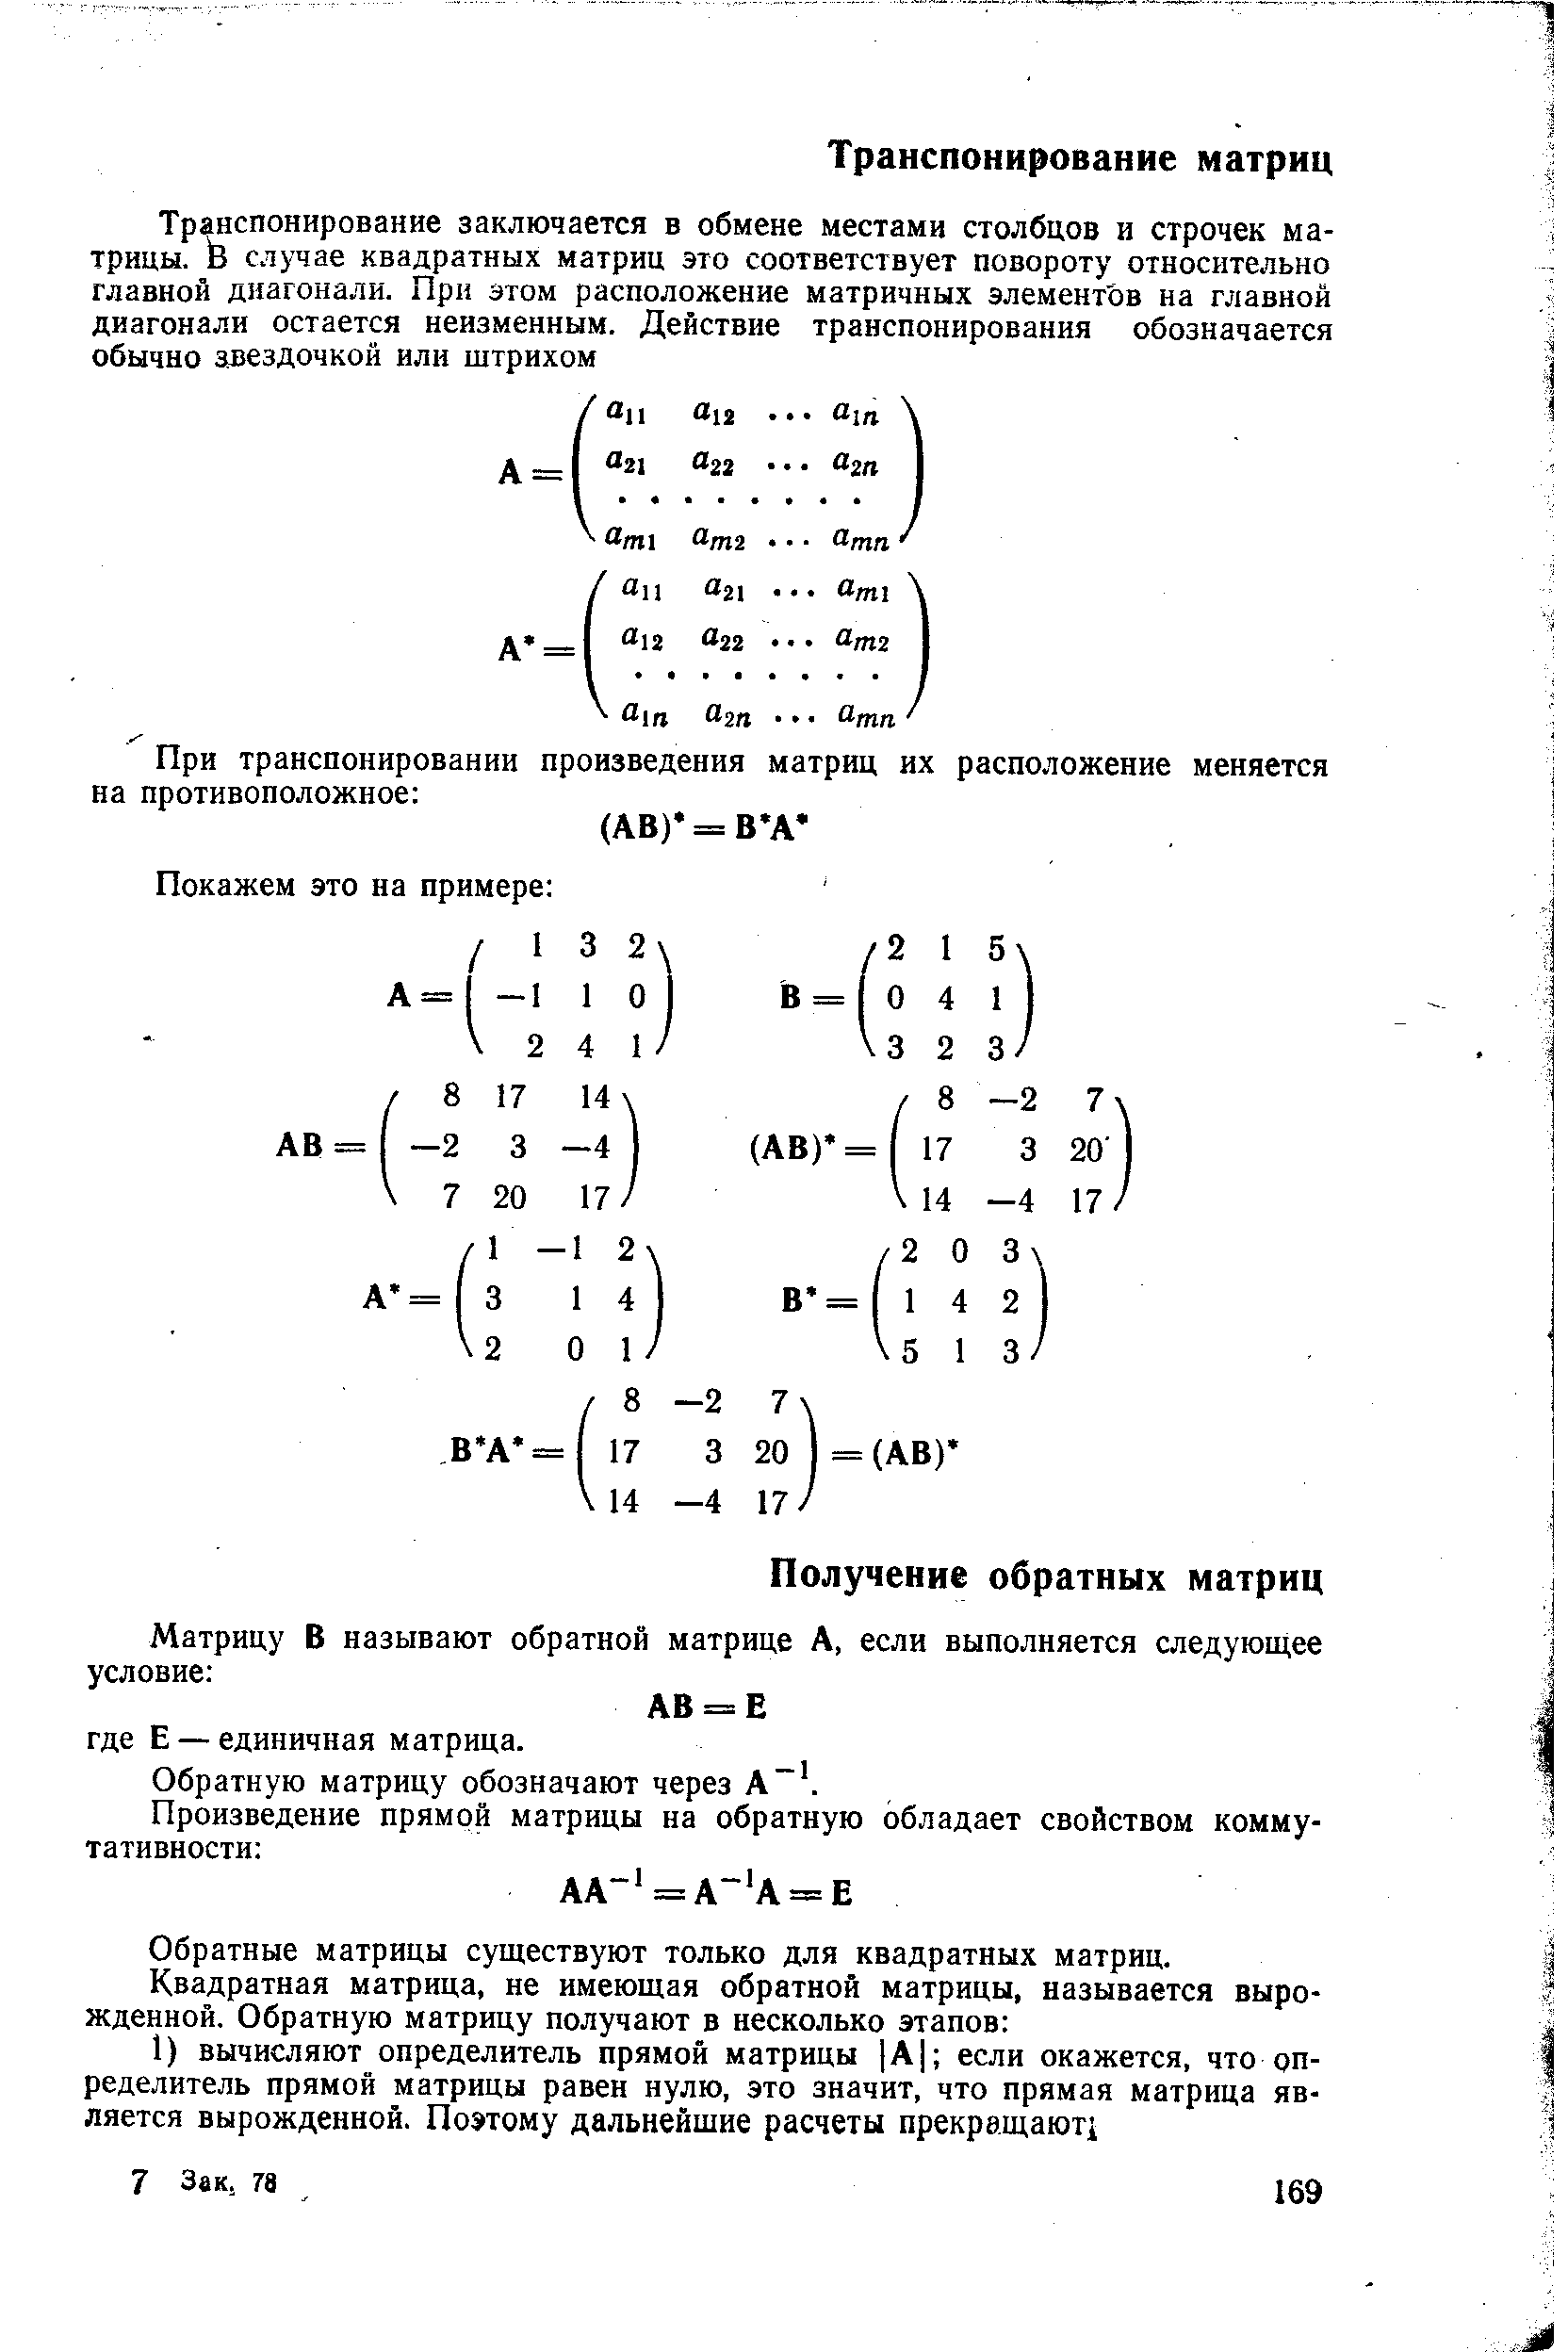 Обратную матрицу обозначают через А .